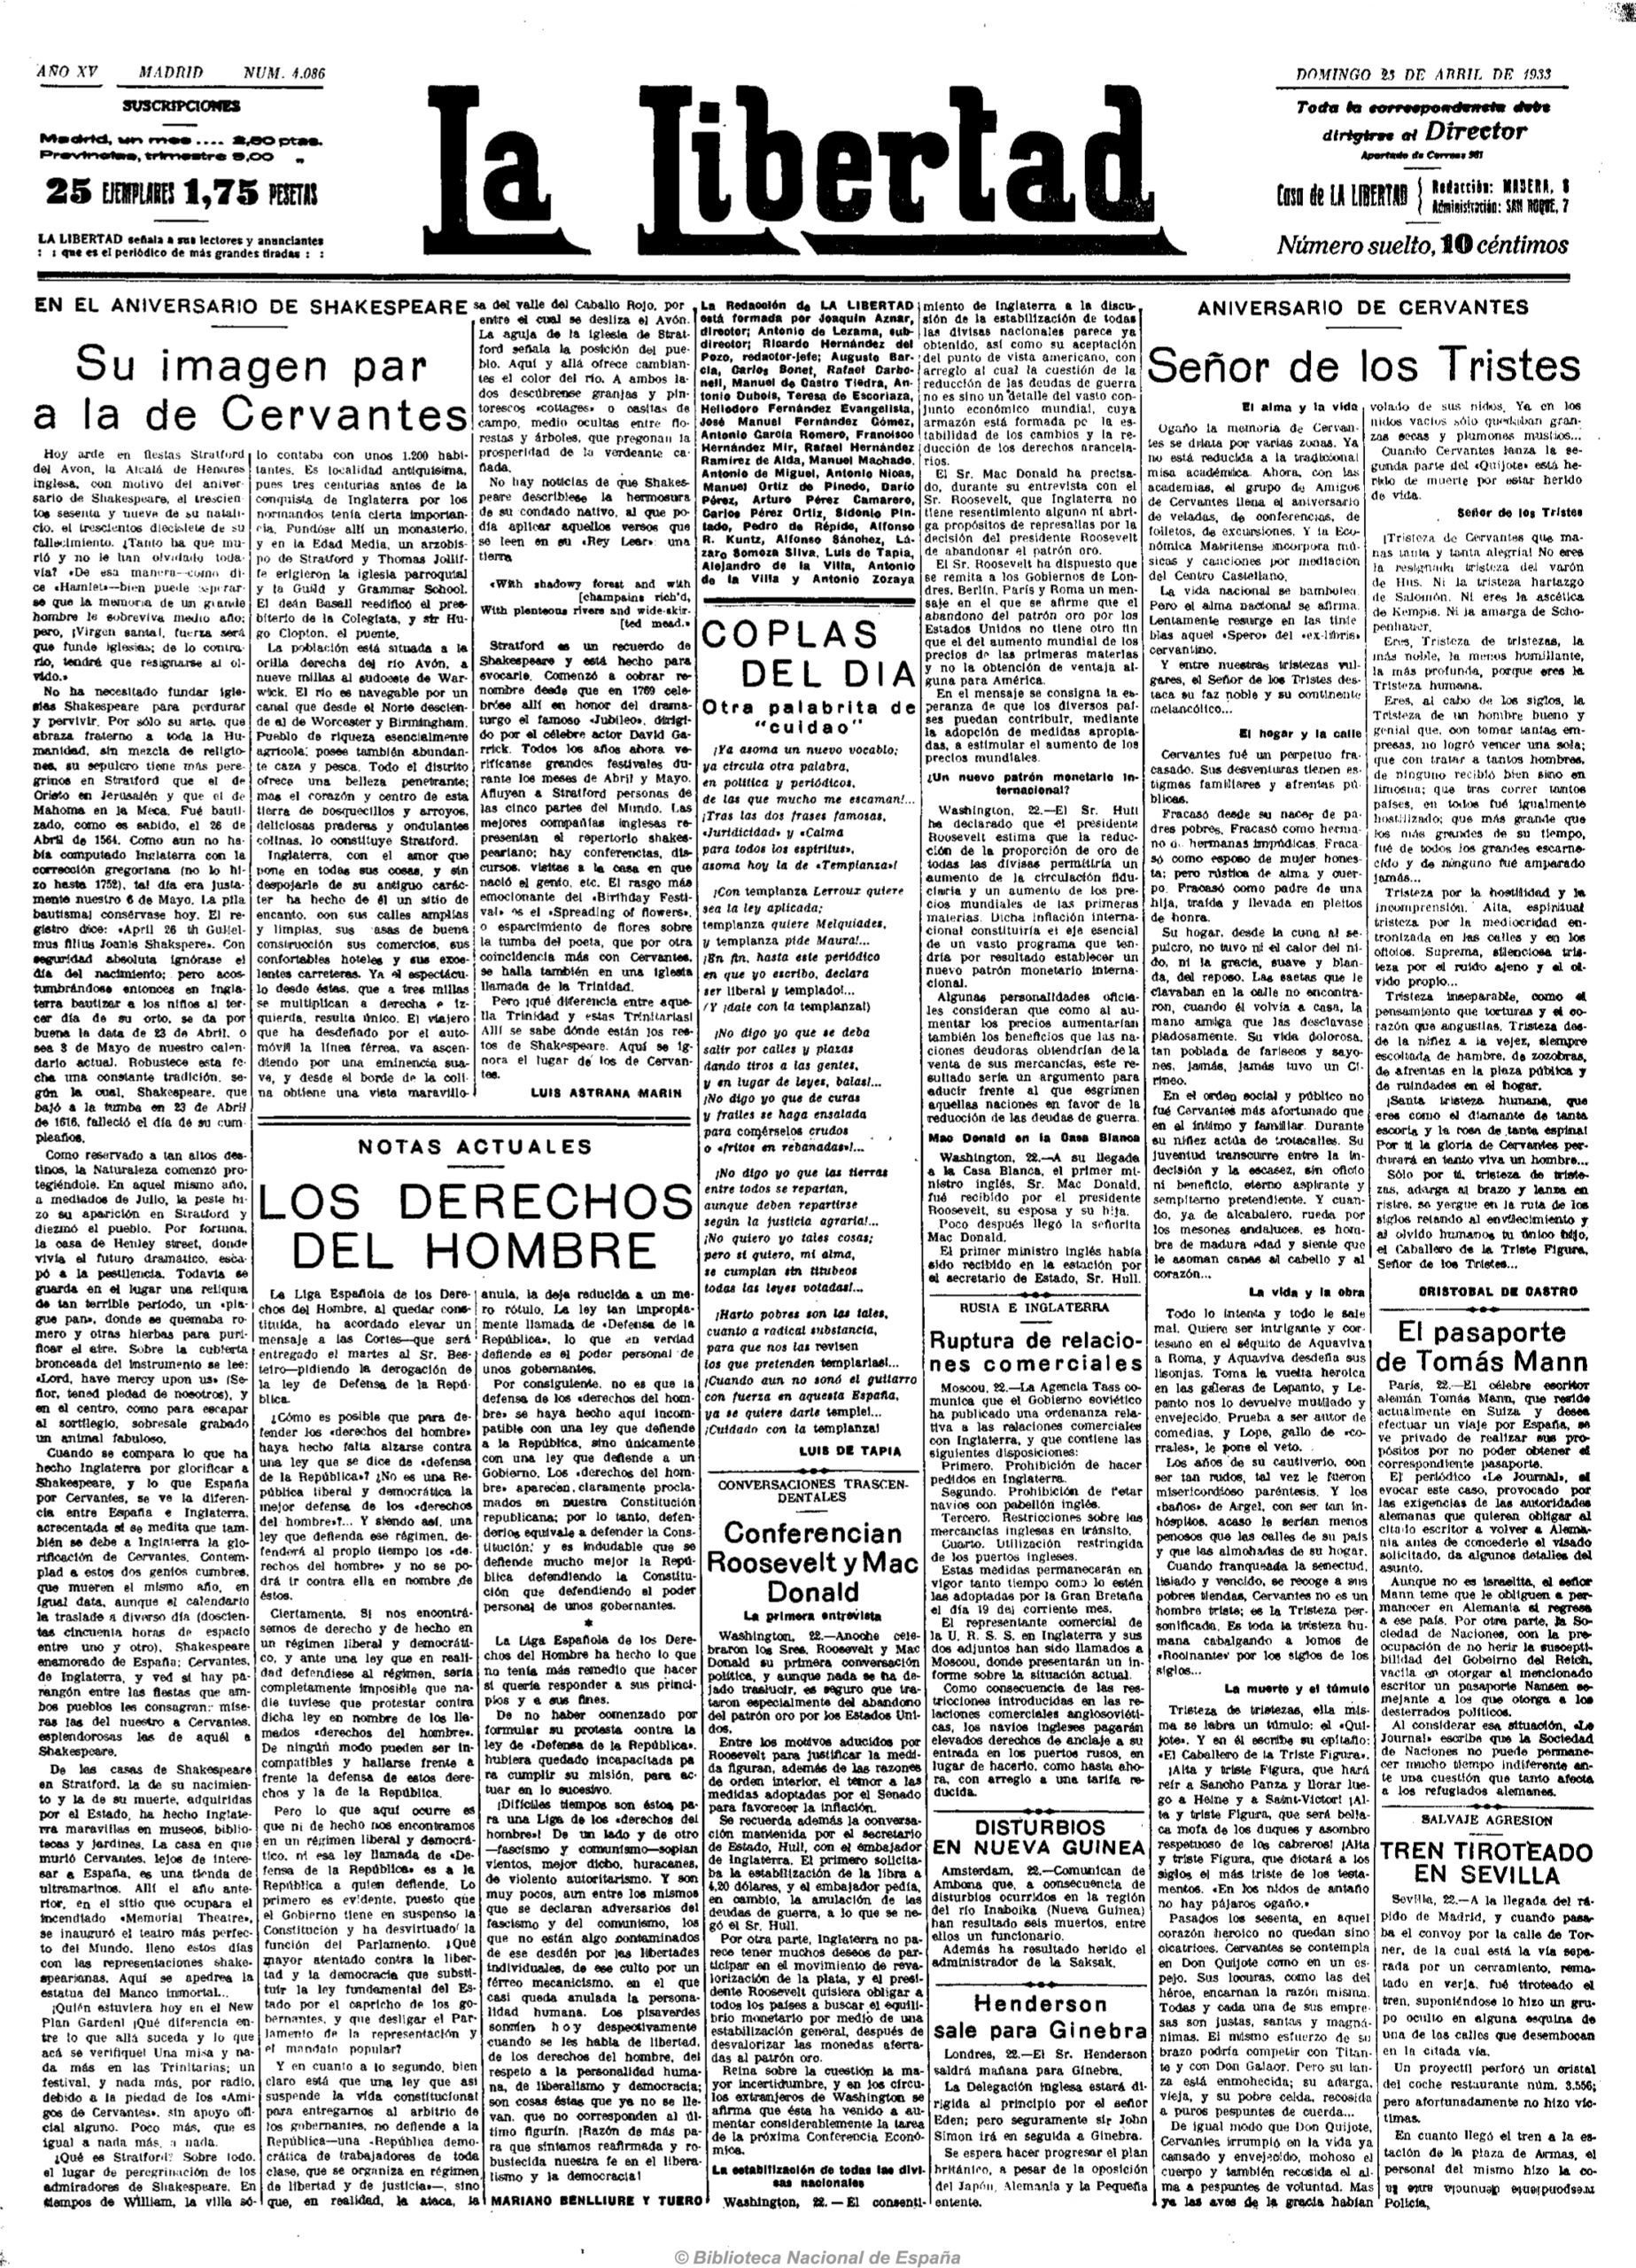 Artículo de Luis Astrana Marín un 23 de abril de 1933